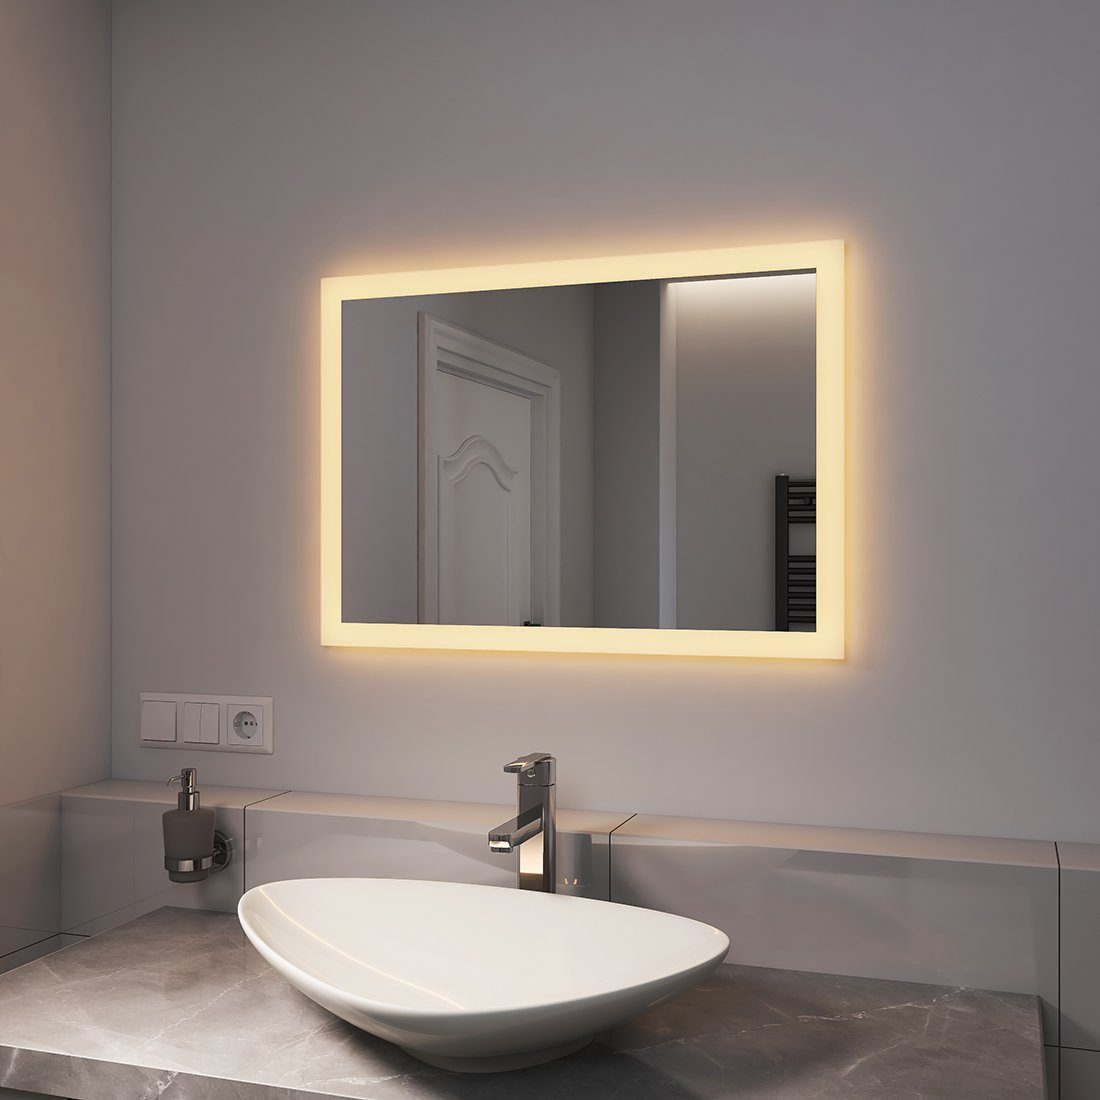 EMKE Badspiegel Badezimmerspiegel LED Warmweißer beleuchtung mit mit Badspiegel Wandschalter 3000K und Wandspiegel